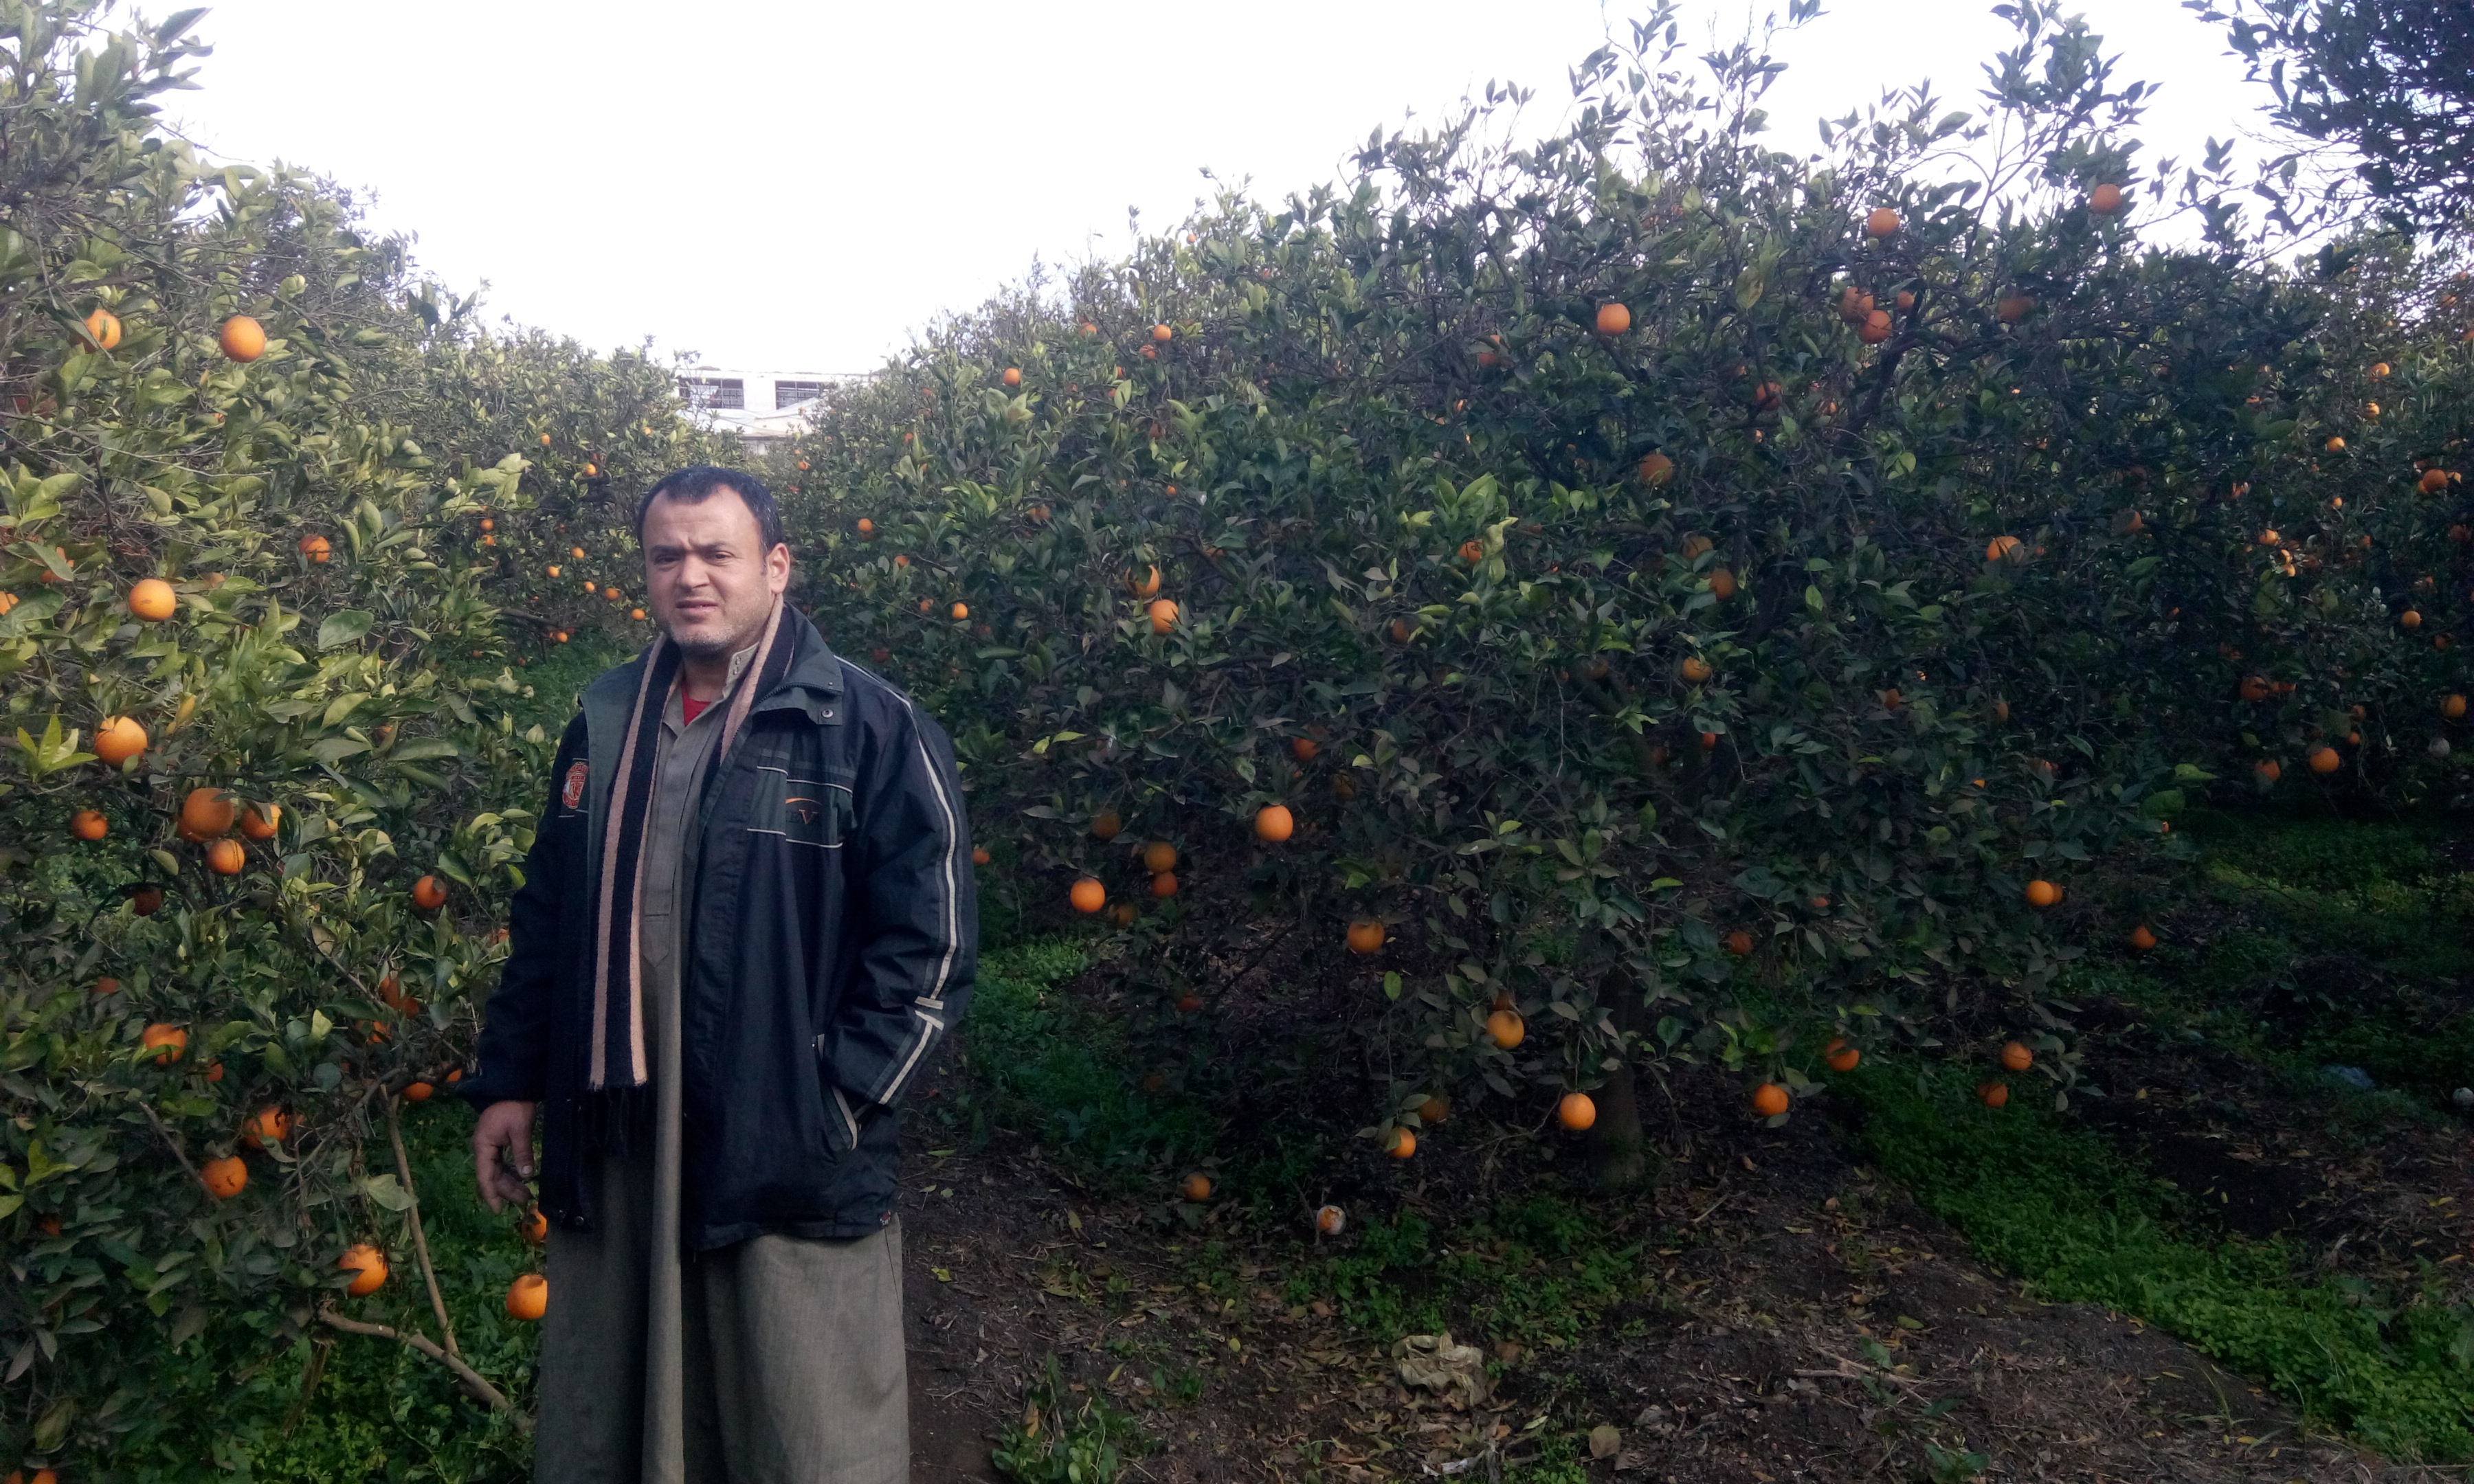 البرتقال واليوسفي يزينون أشجار الغربيه